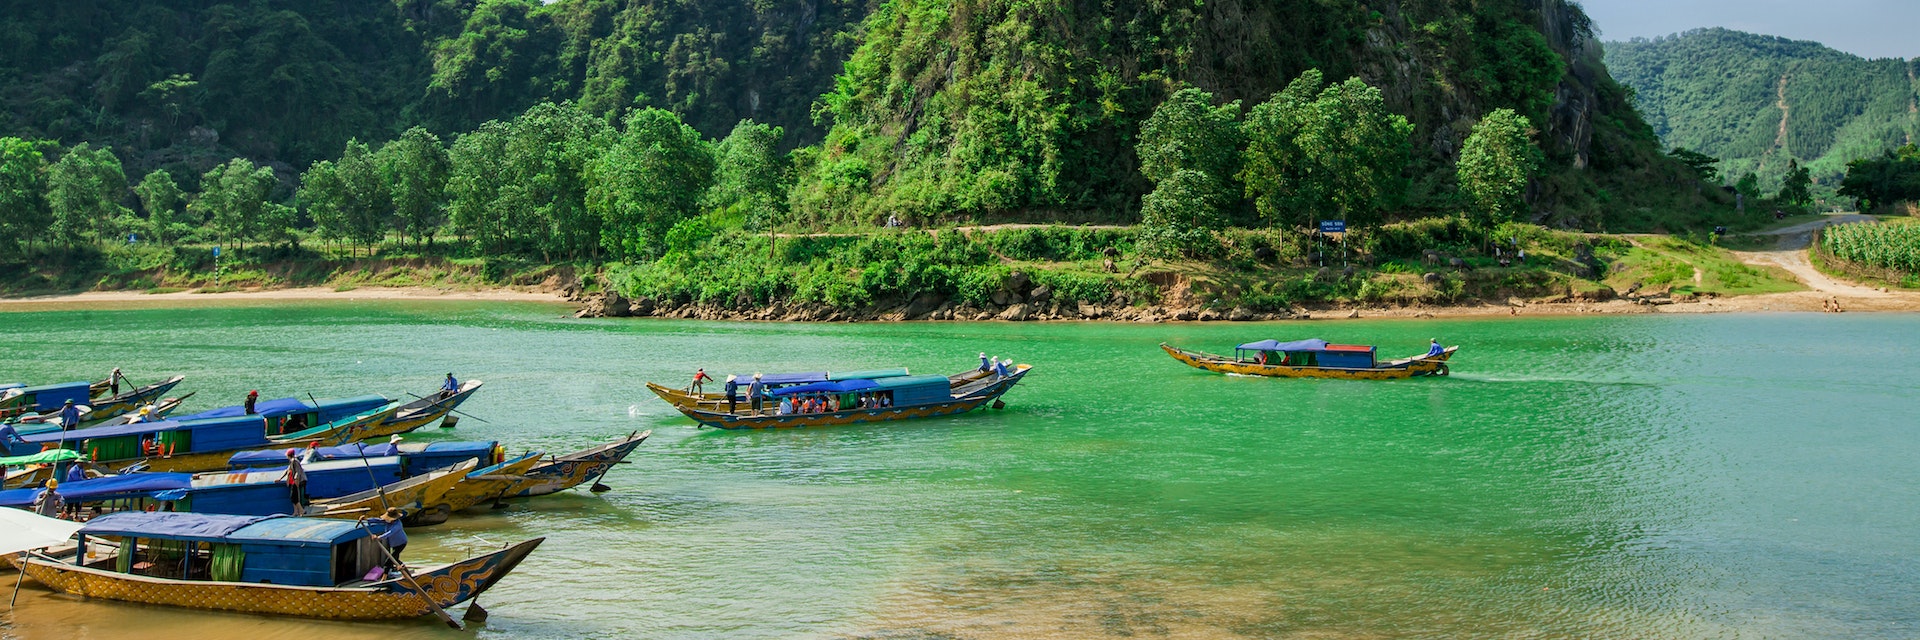 Boats at Phong Nha Ke Bang National Park.
